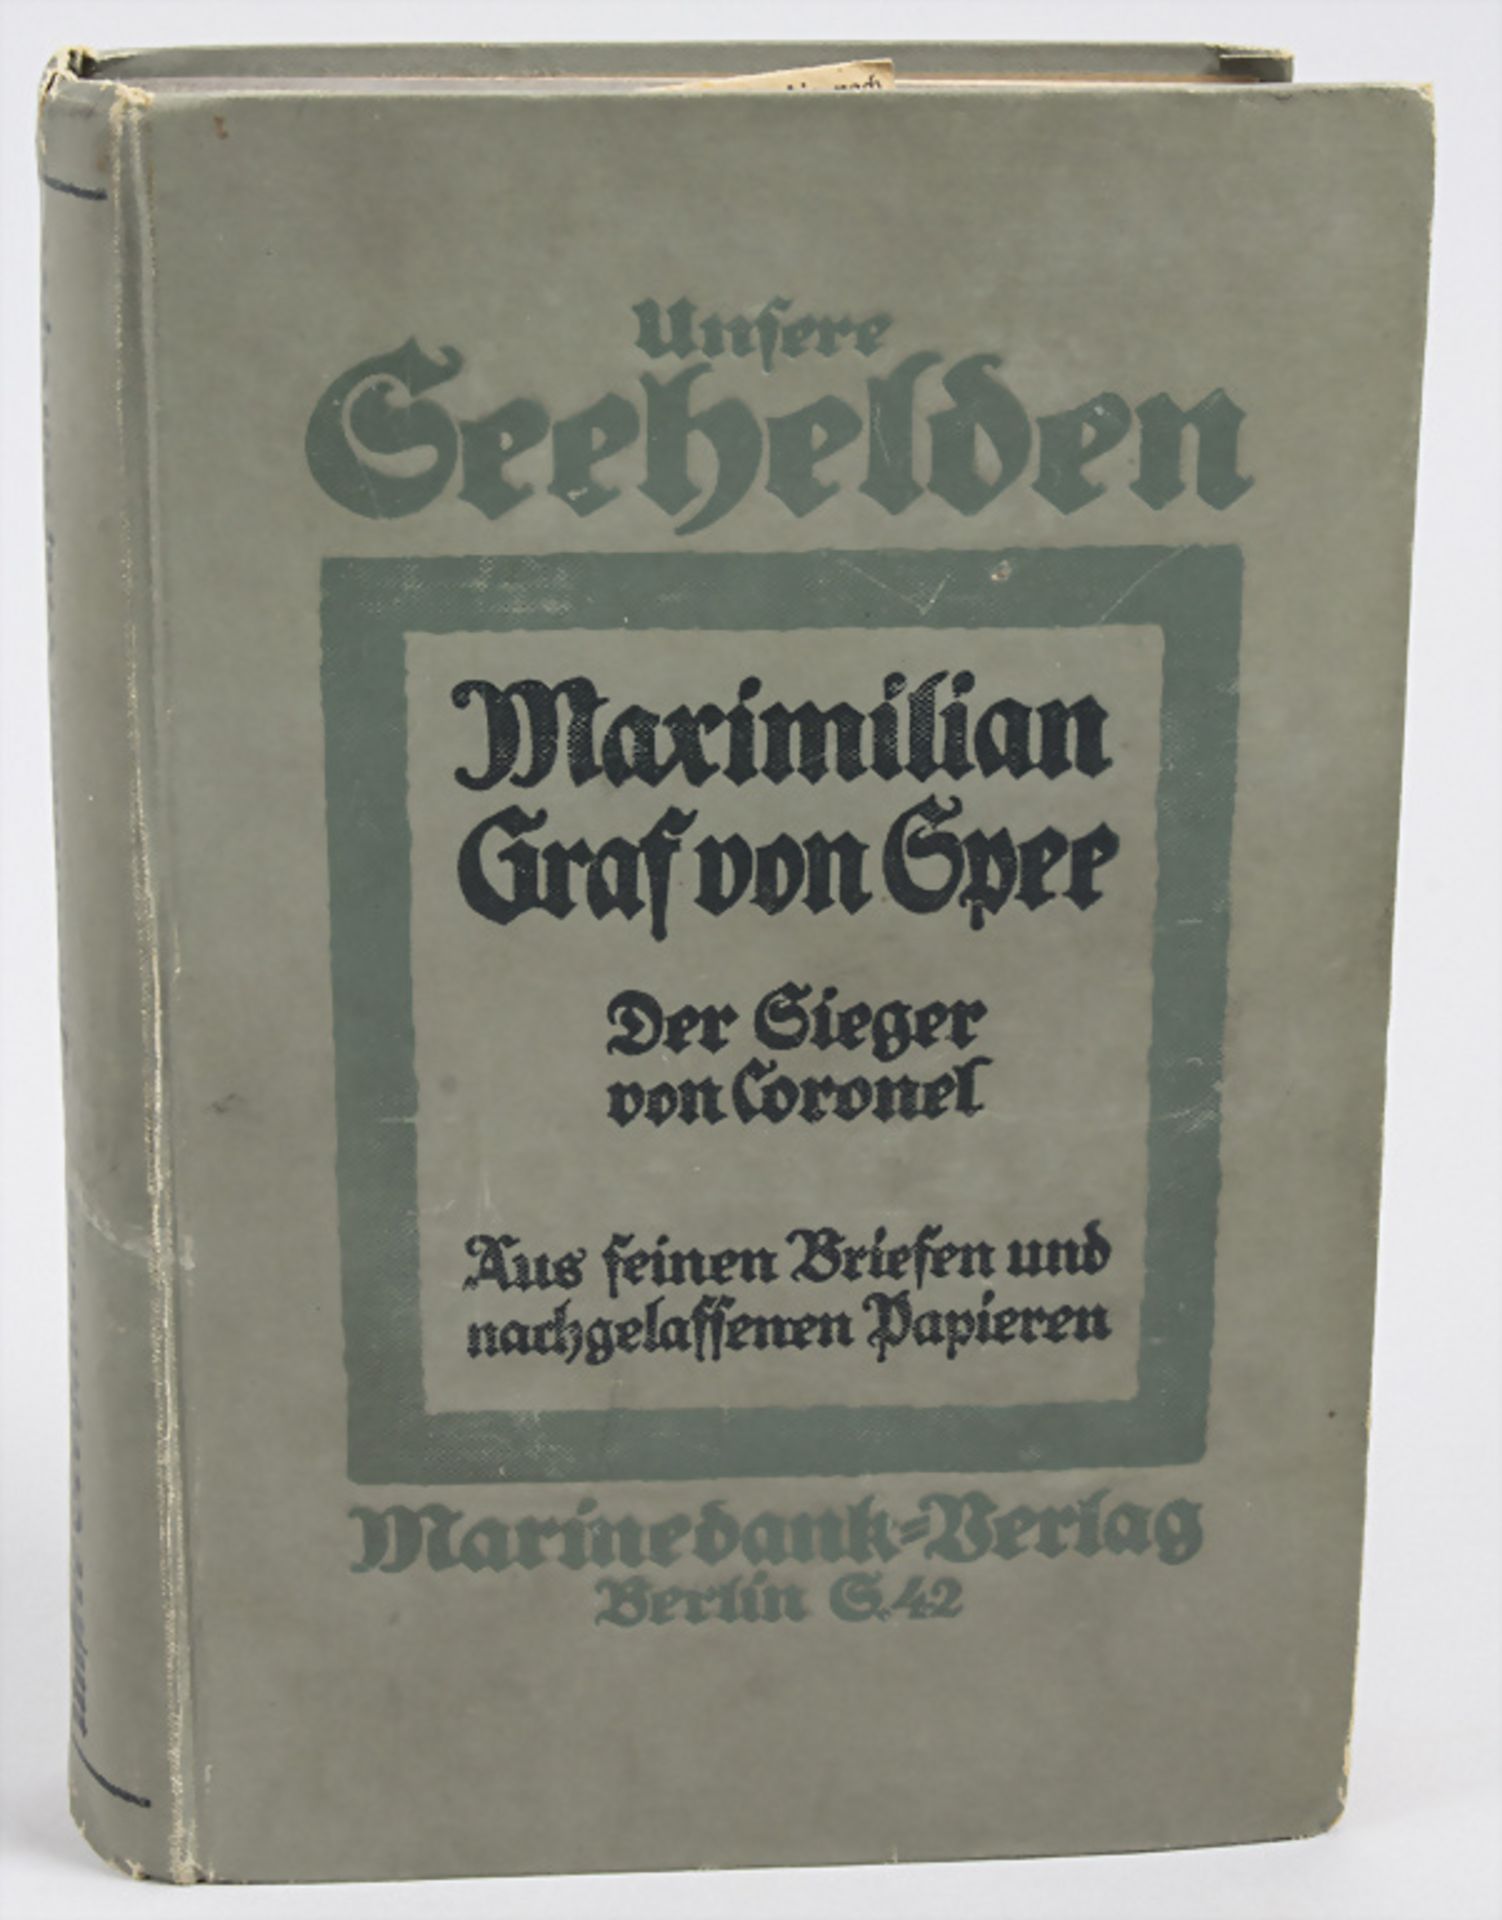 'Unsere Seehelden: Maximilian Graf von Spee, Der Sieger von Coronel', 1915